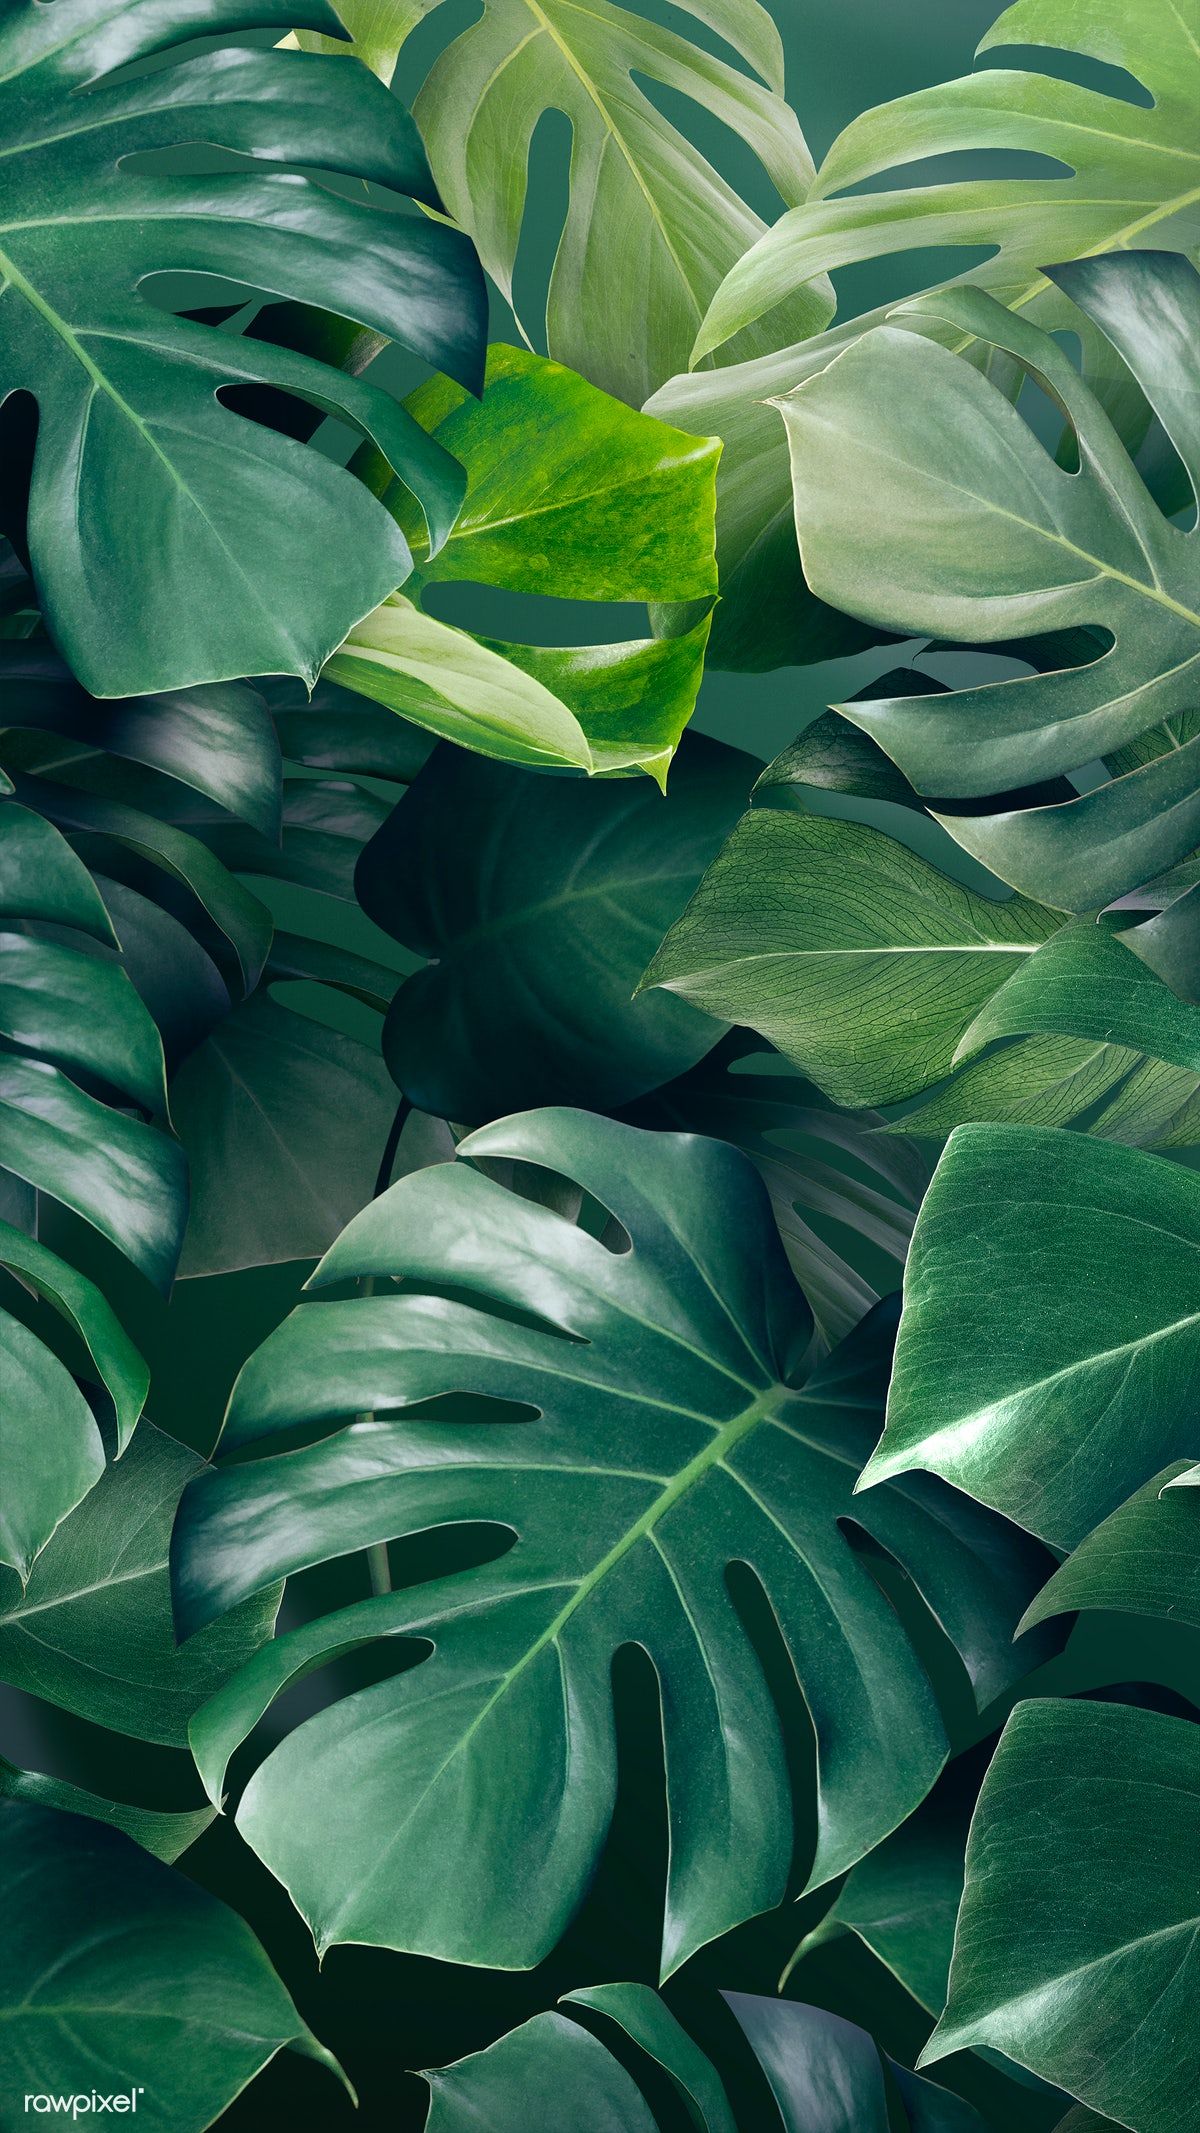 Green monstera leaves background design resource / Adj. Leaf background, Green leaf background, Green aesthetic